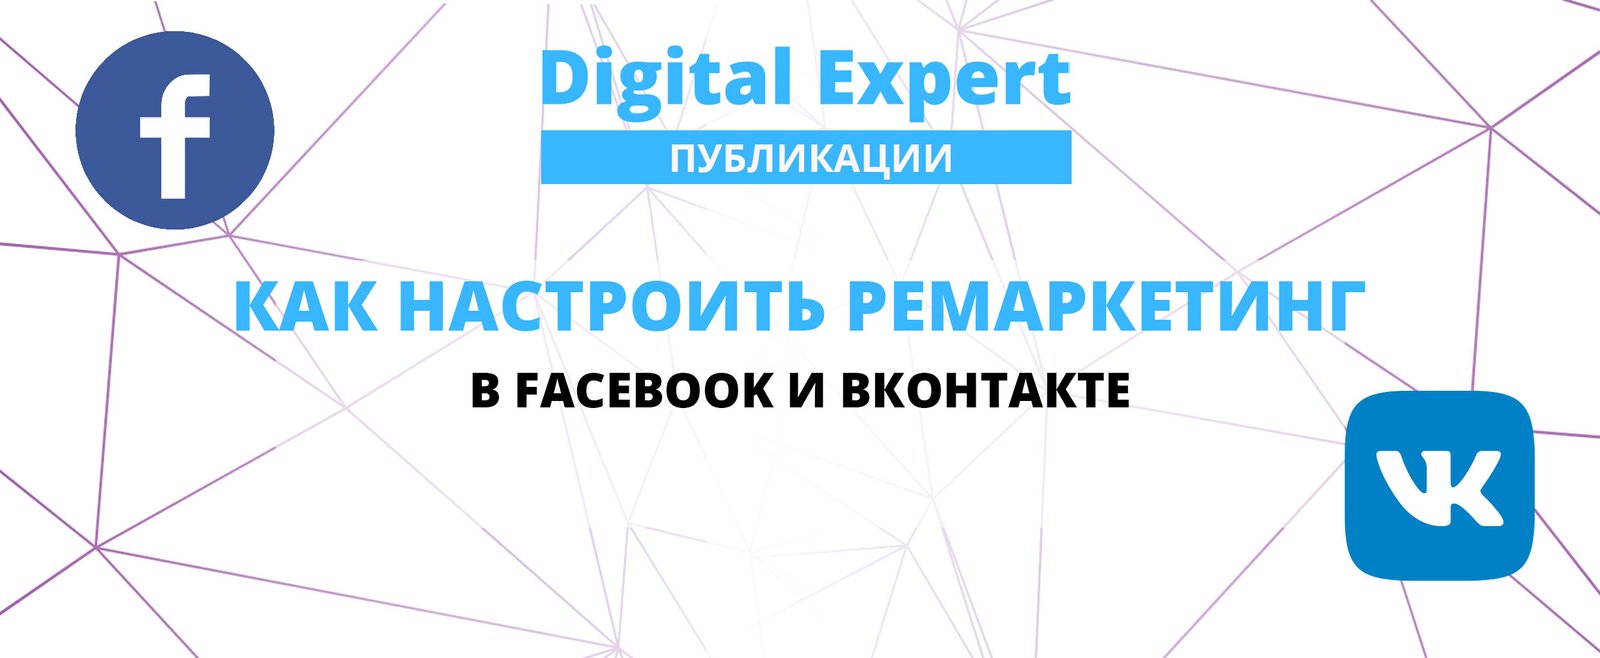 Как настроить ремаркетинг в Facebook и Вконтакте